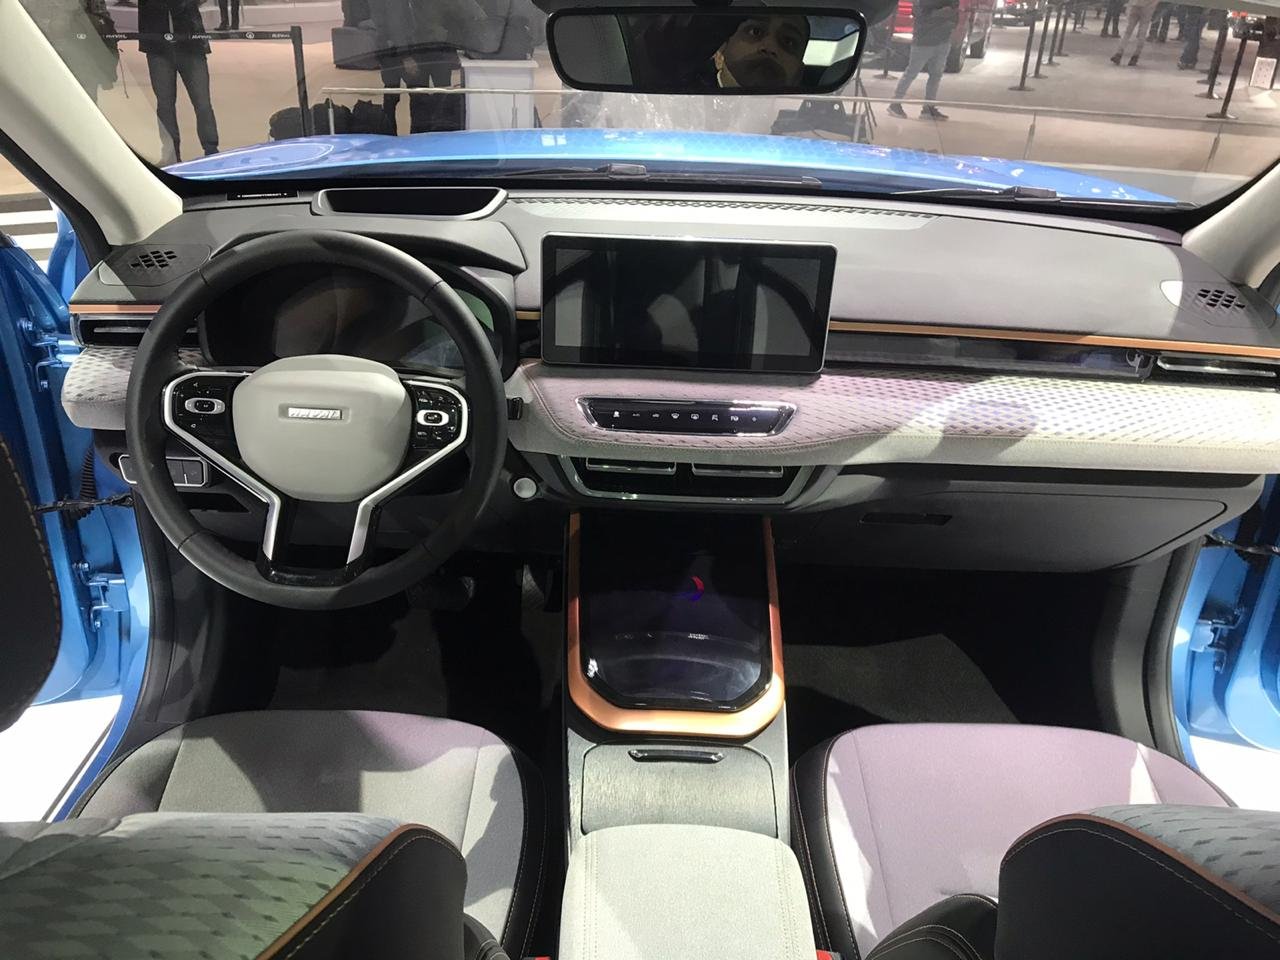 Auto Expo 2020 - Haval Concept H interior